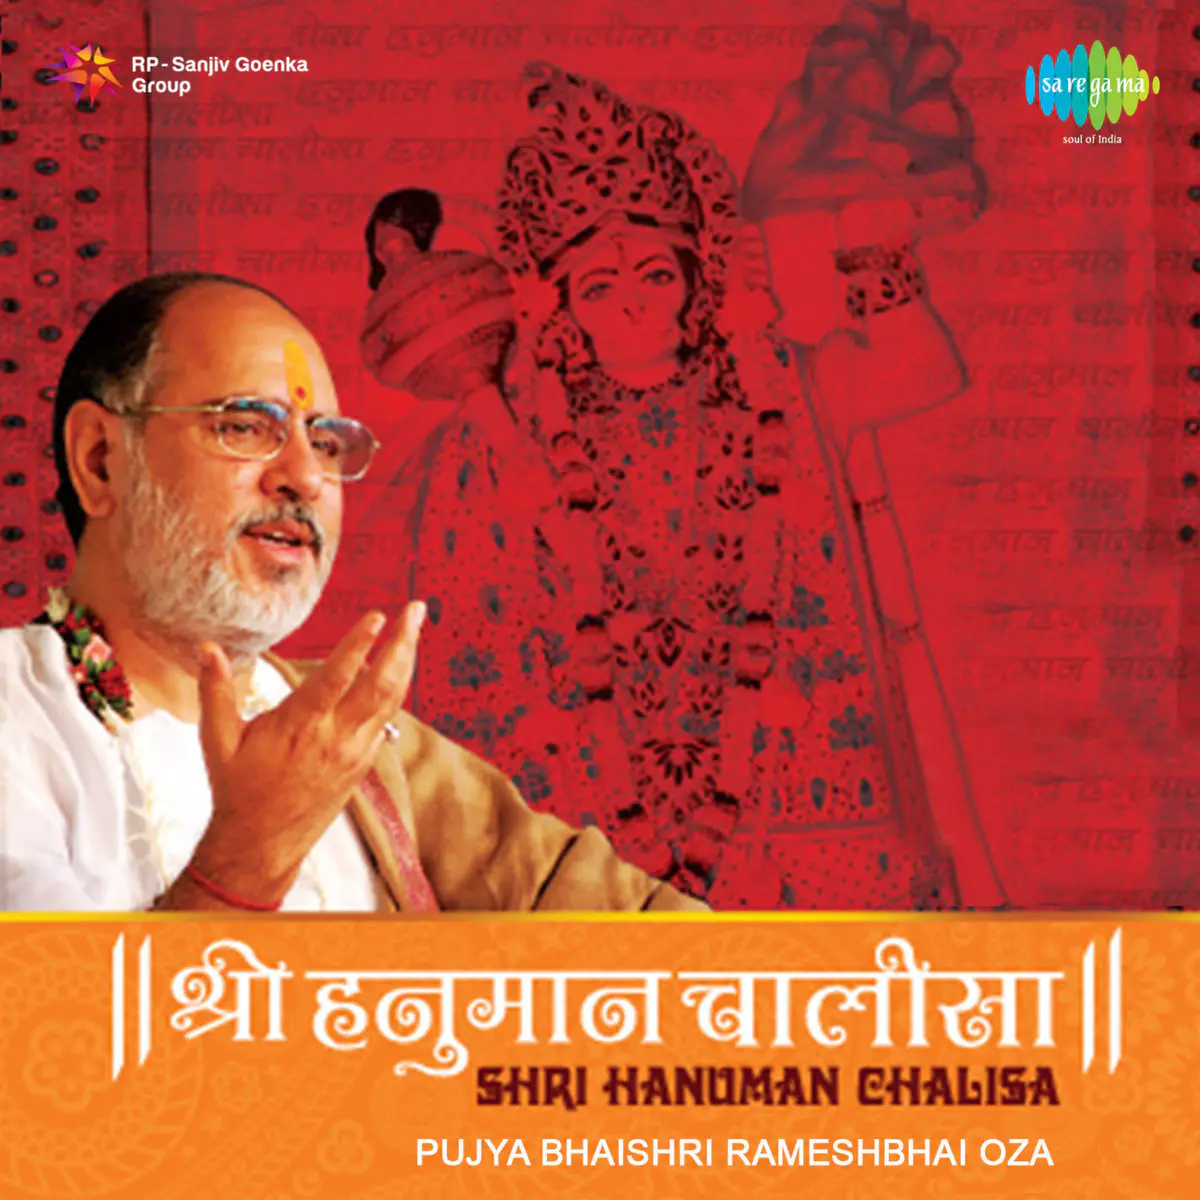 Hanuman Chalisa Lyrics In Hindi Hanuman Chalisa Pujya Bhaishree Rameshbhai Oza Hanuman Chalisa Song Lyrics In English Free Online On Gaana Com